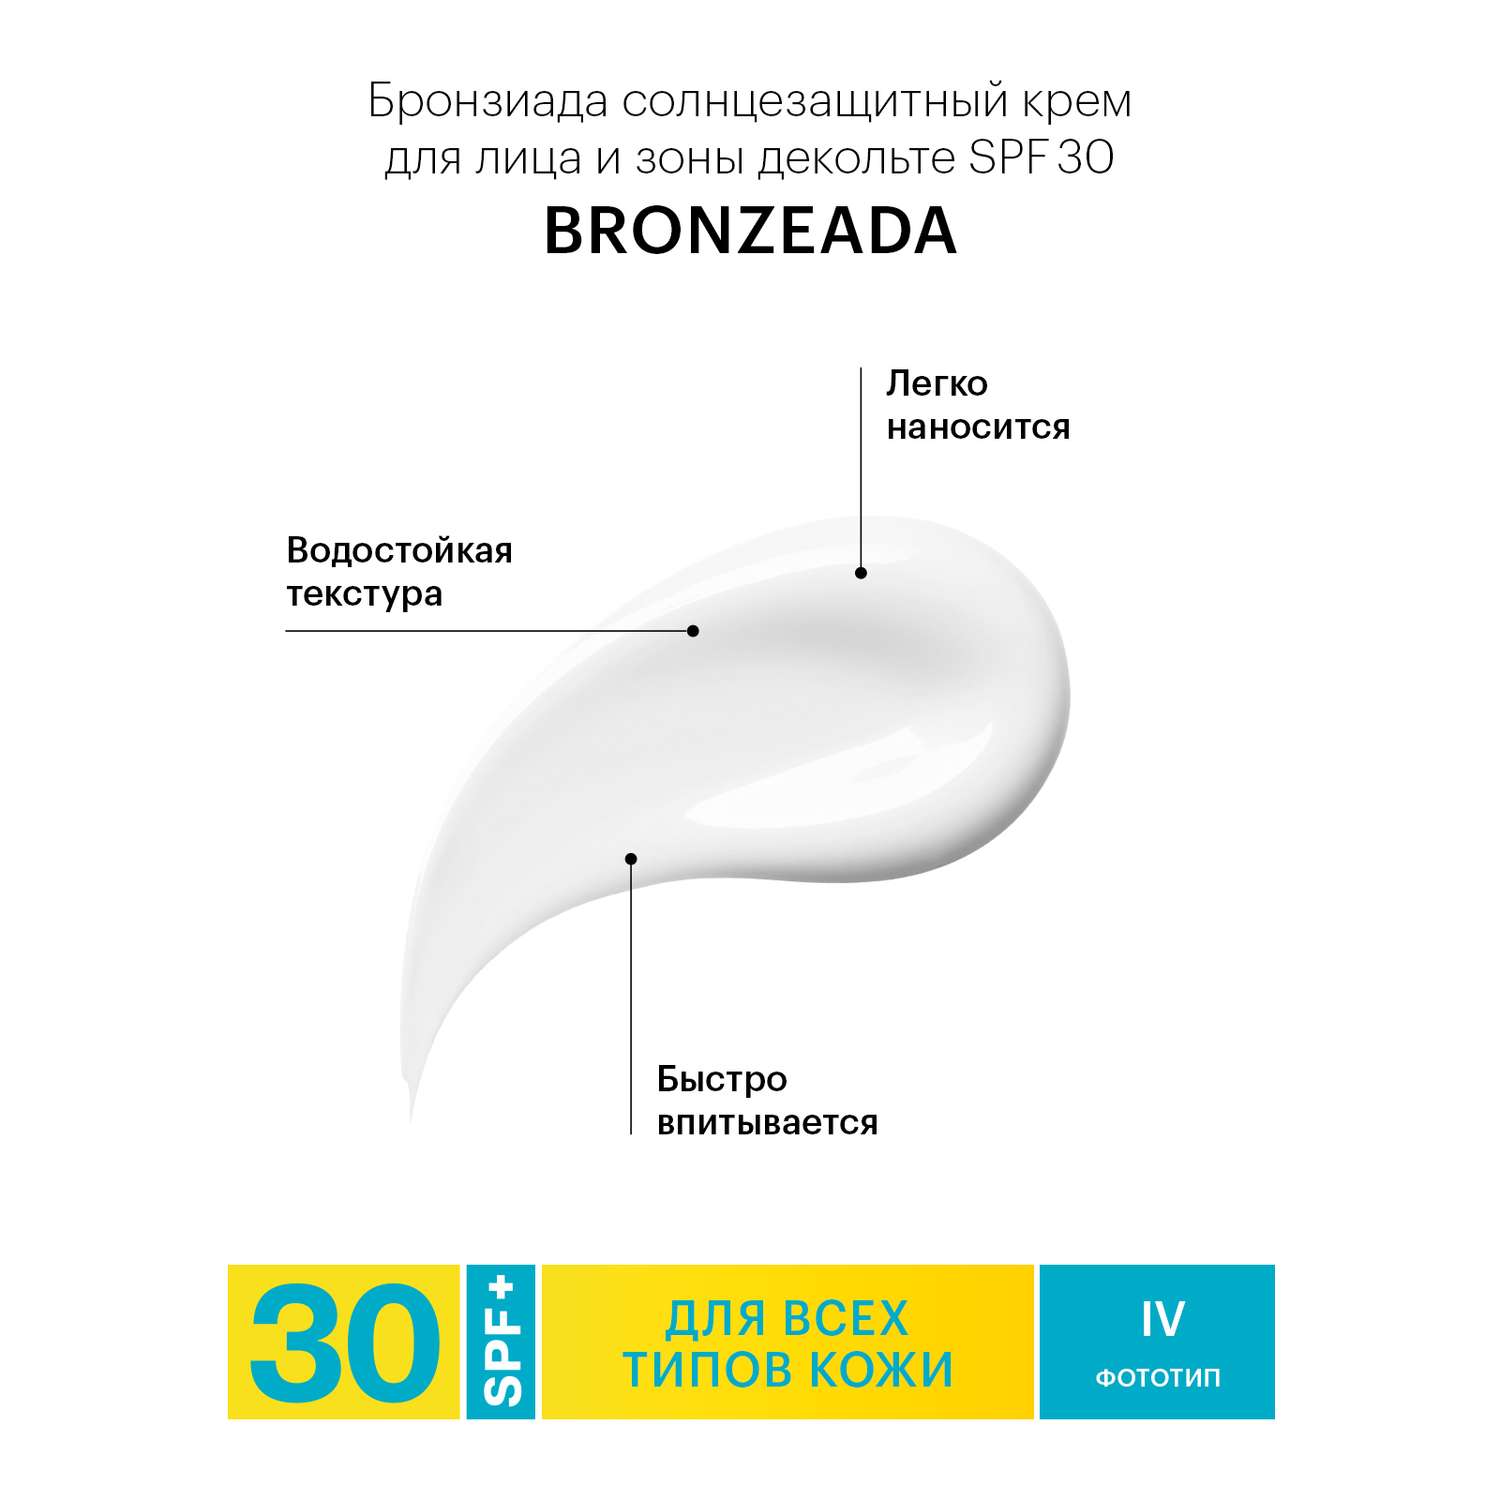 Солнцезащитный крем Librederm Bronzeada для лица и зоны декольте SPF30 - фото 6